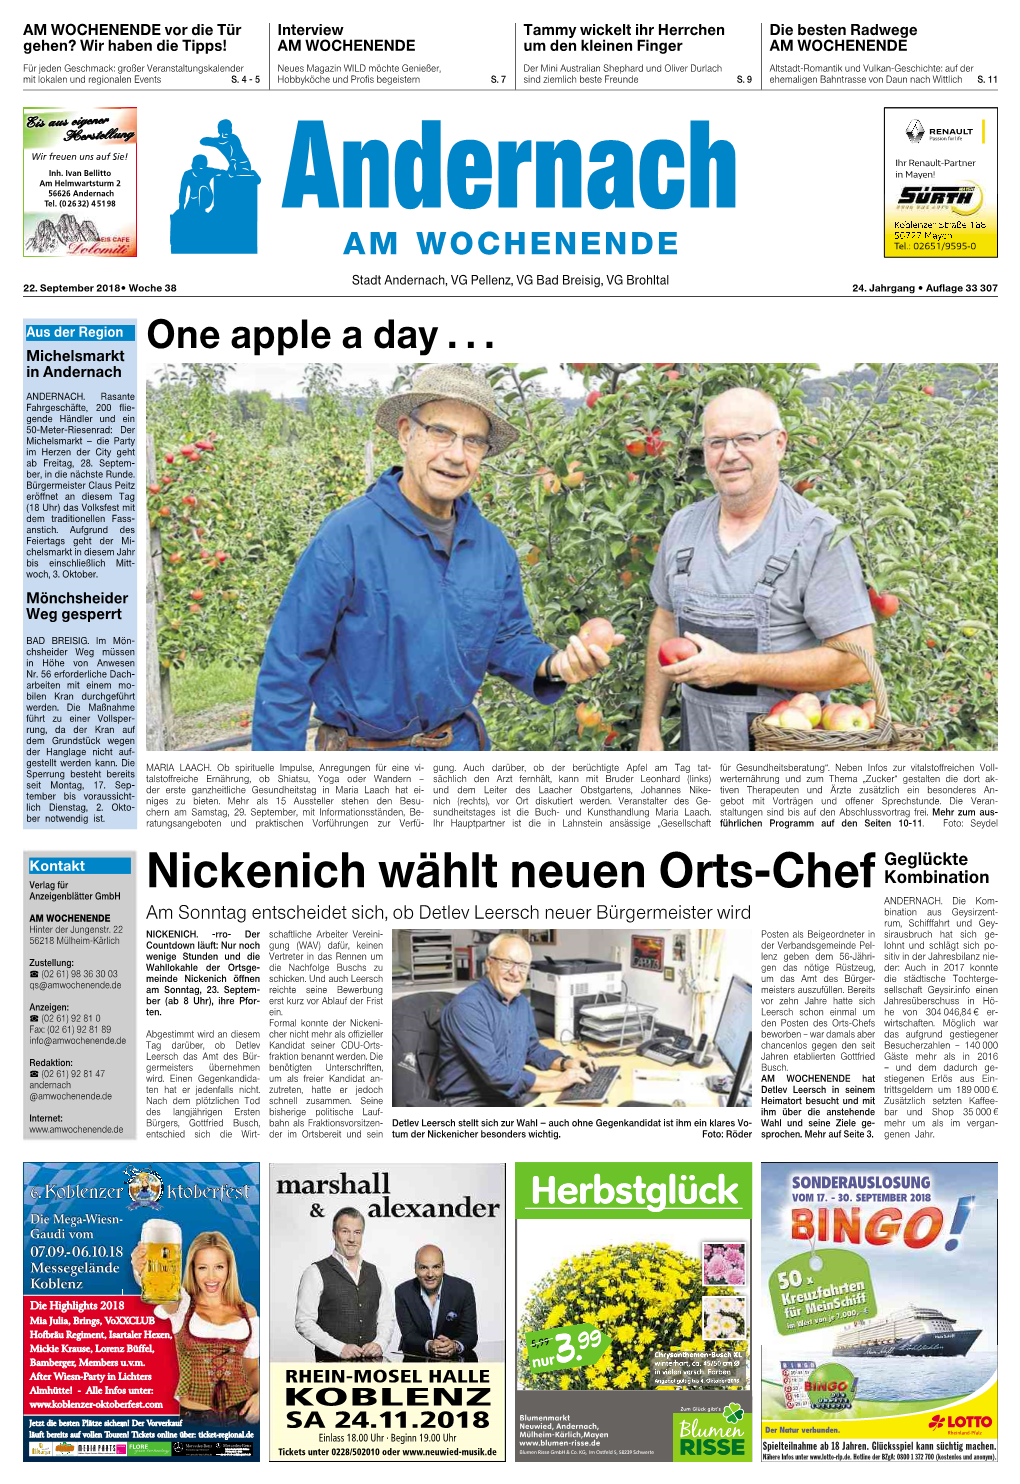 Nickenich Wählt Neuen Orts-Chef Anzeigenblätter Gmbh ANDERNACH